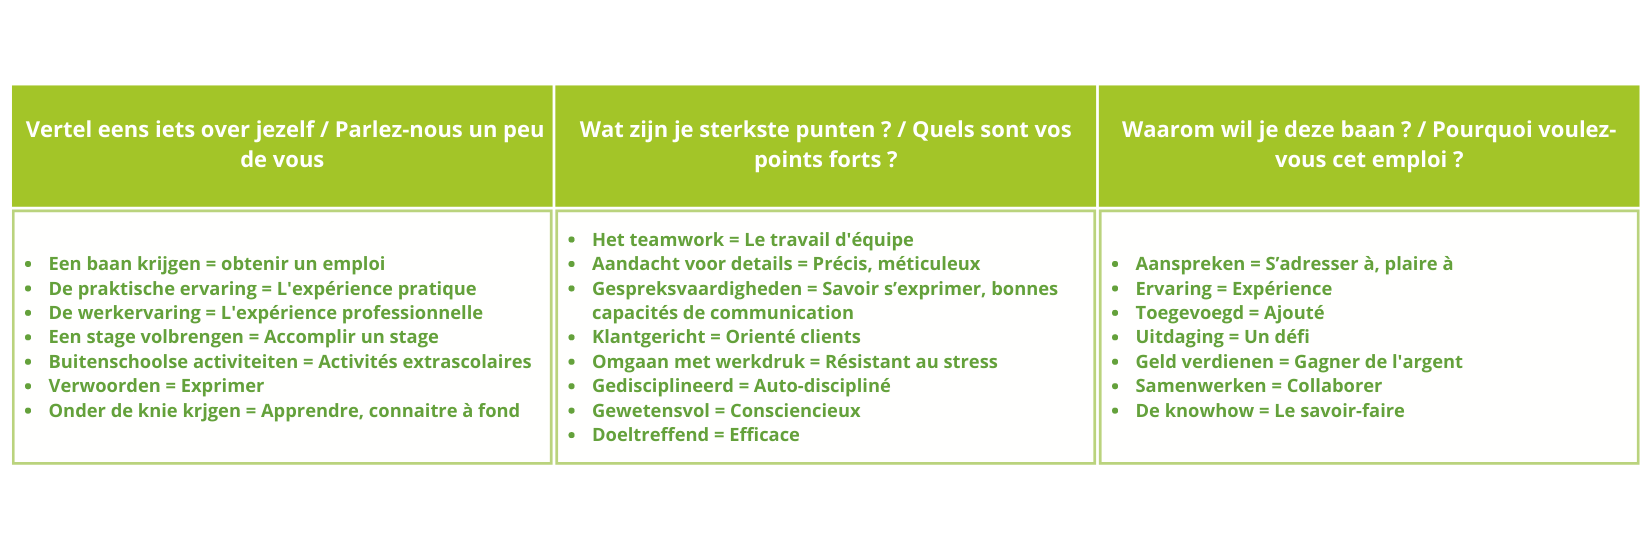 Exemples de réponses pour un entretien d'embauche en néerlandais